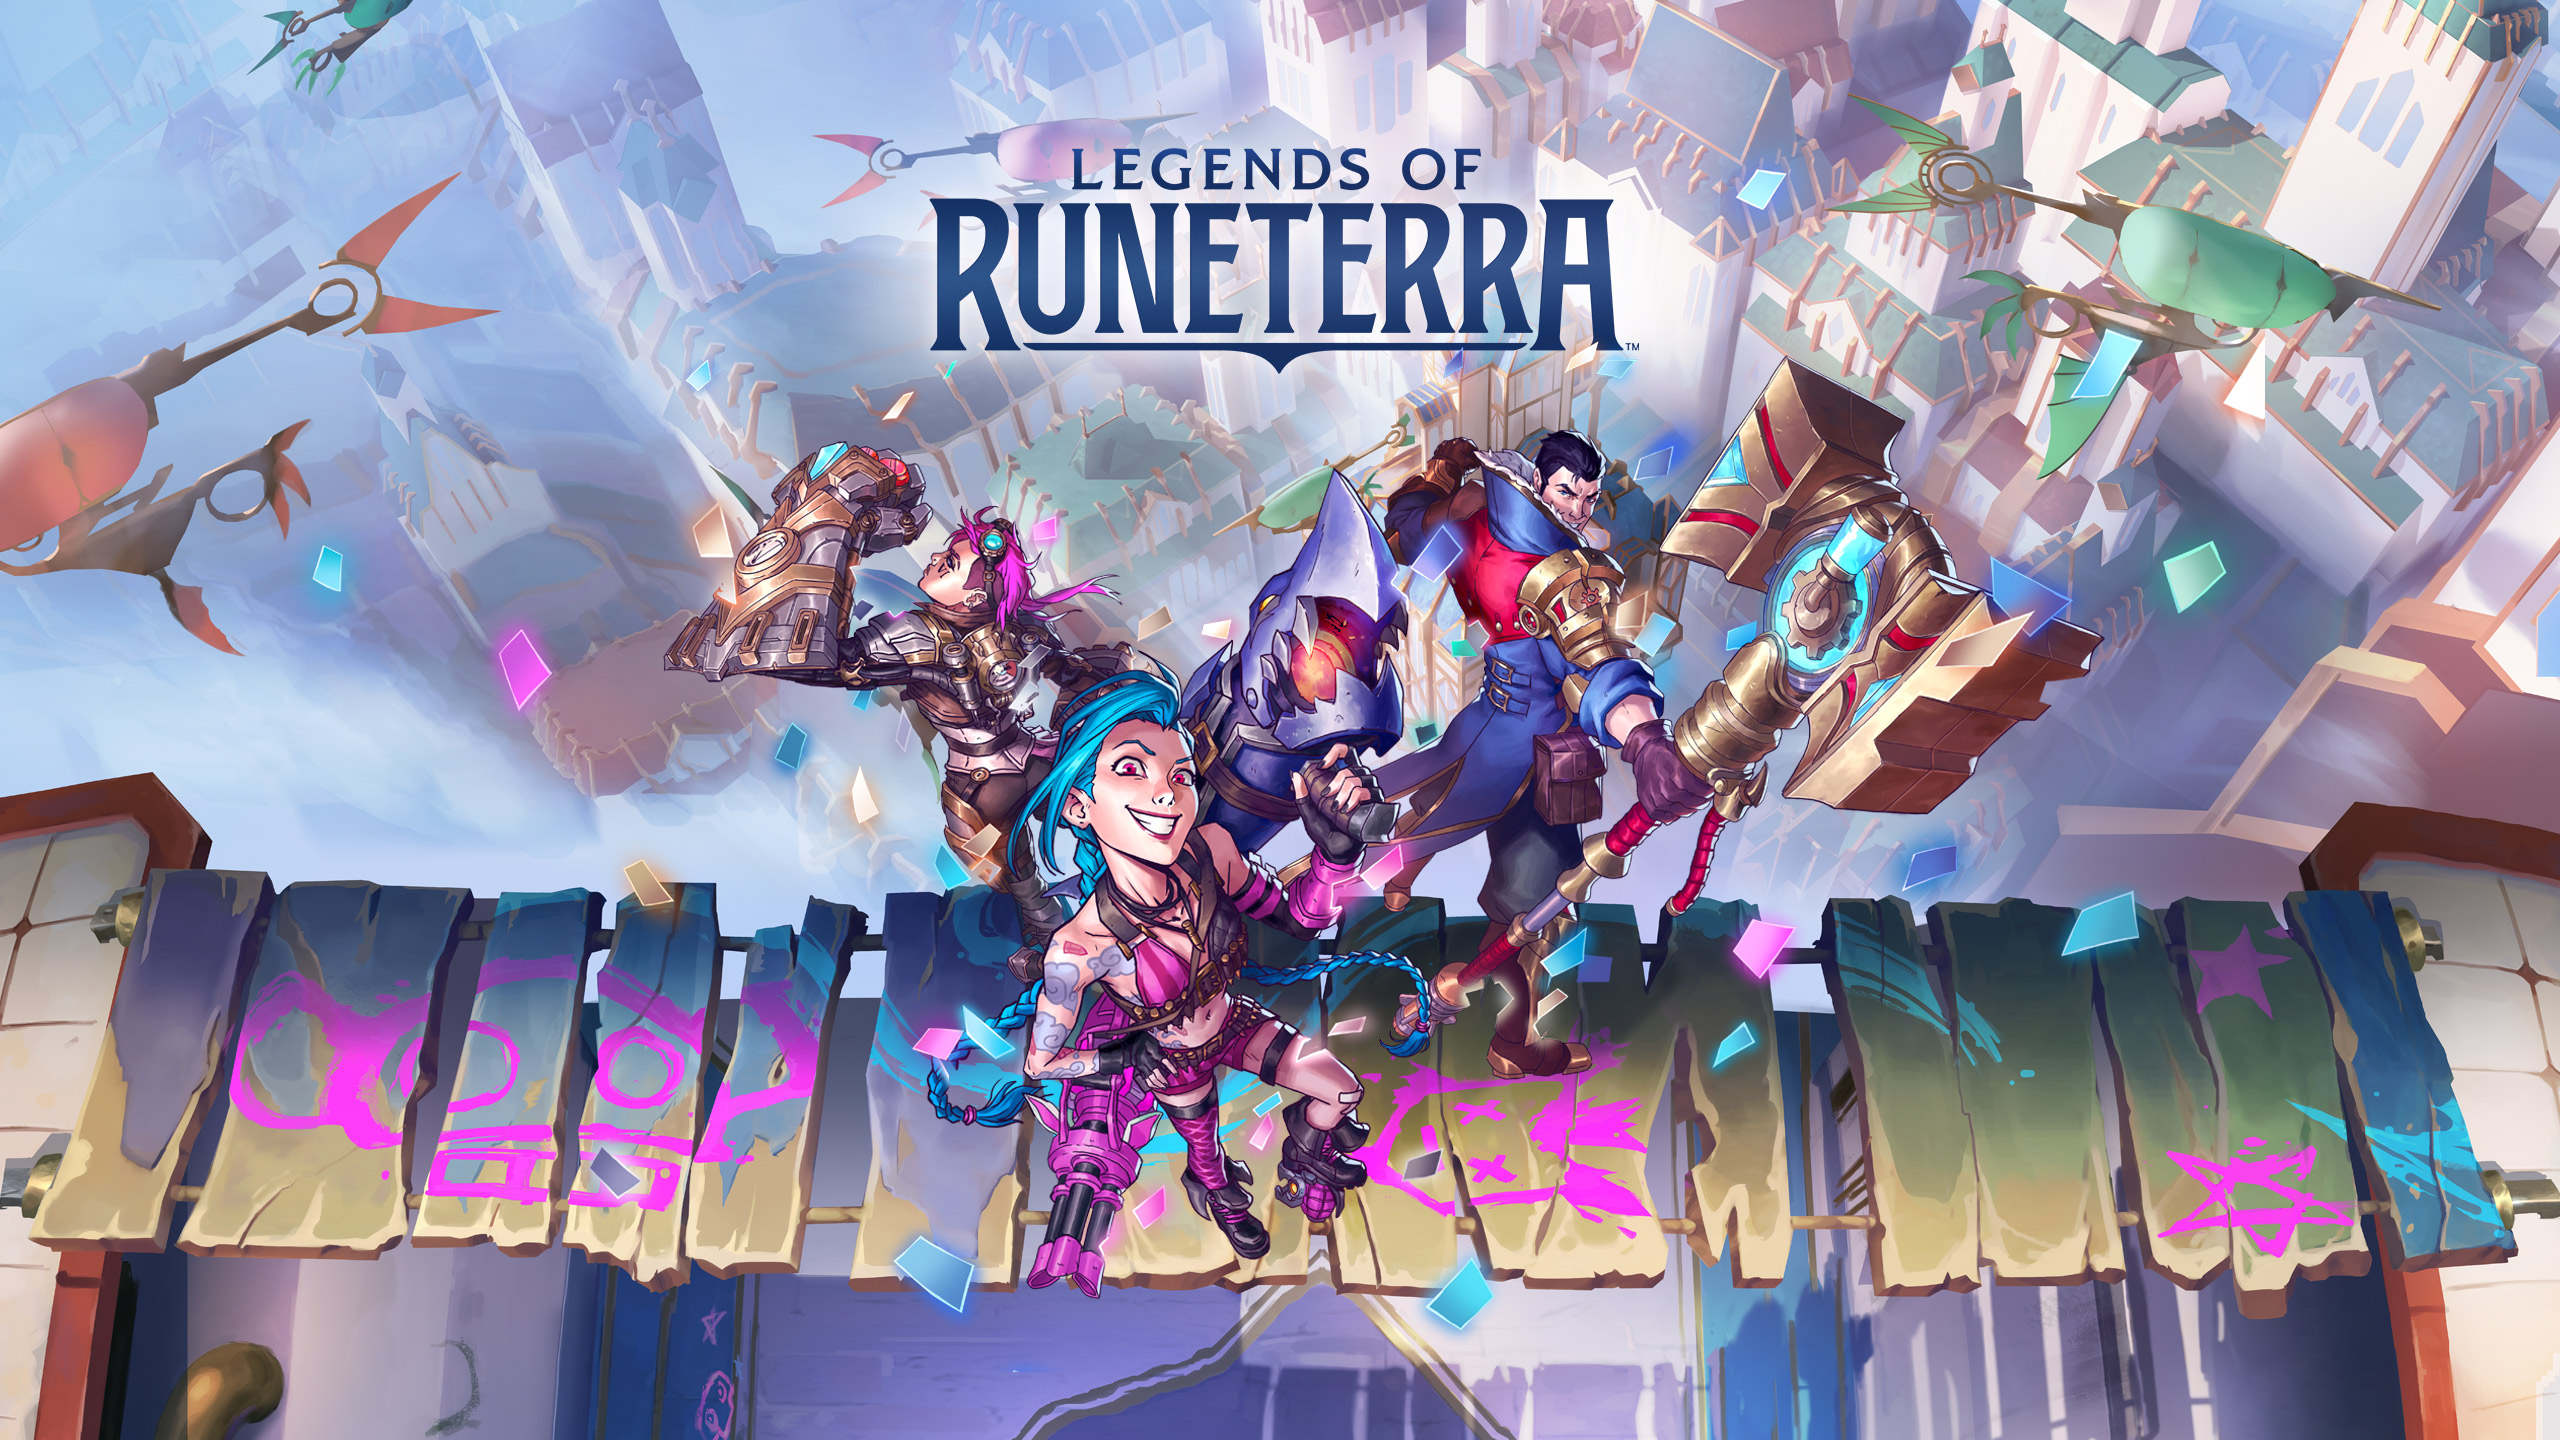 World Ender - Legends of Runeterra Worldwalker Cards - Out of Games